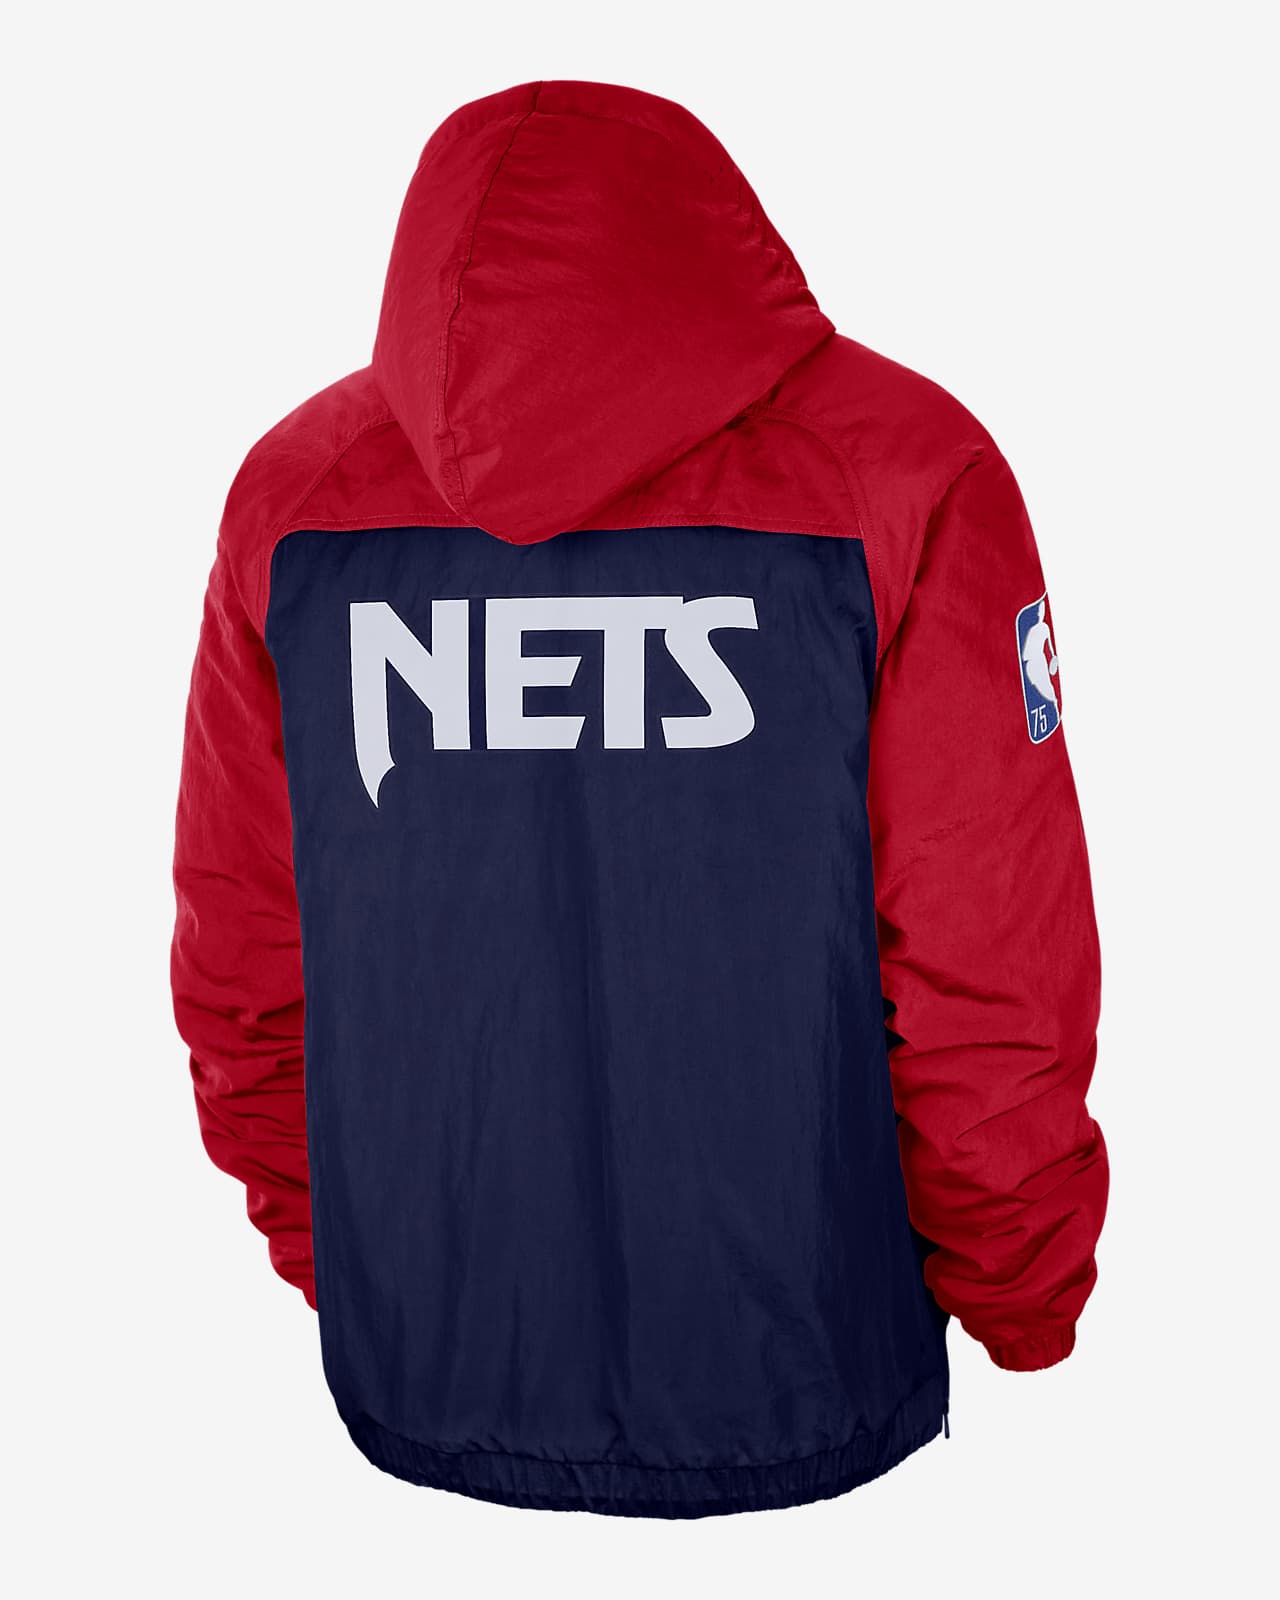 uddøde Inspektion Raffinaderi Brooklyn Nets Courtside Nike NBA Premium-jakke til mænd. Nike DK